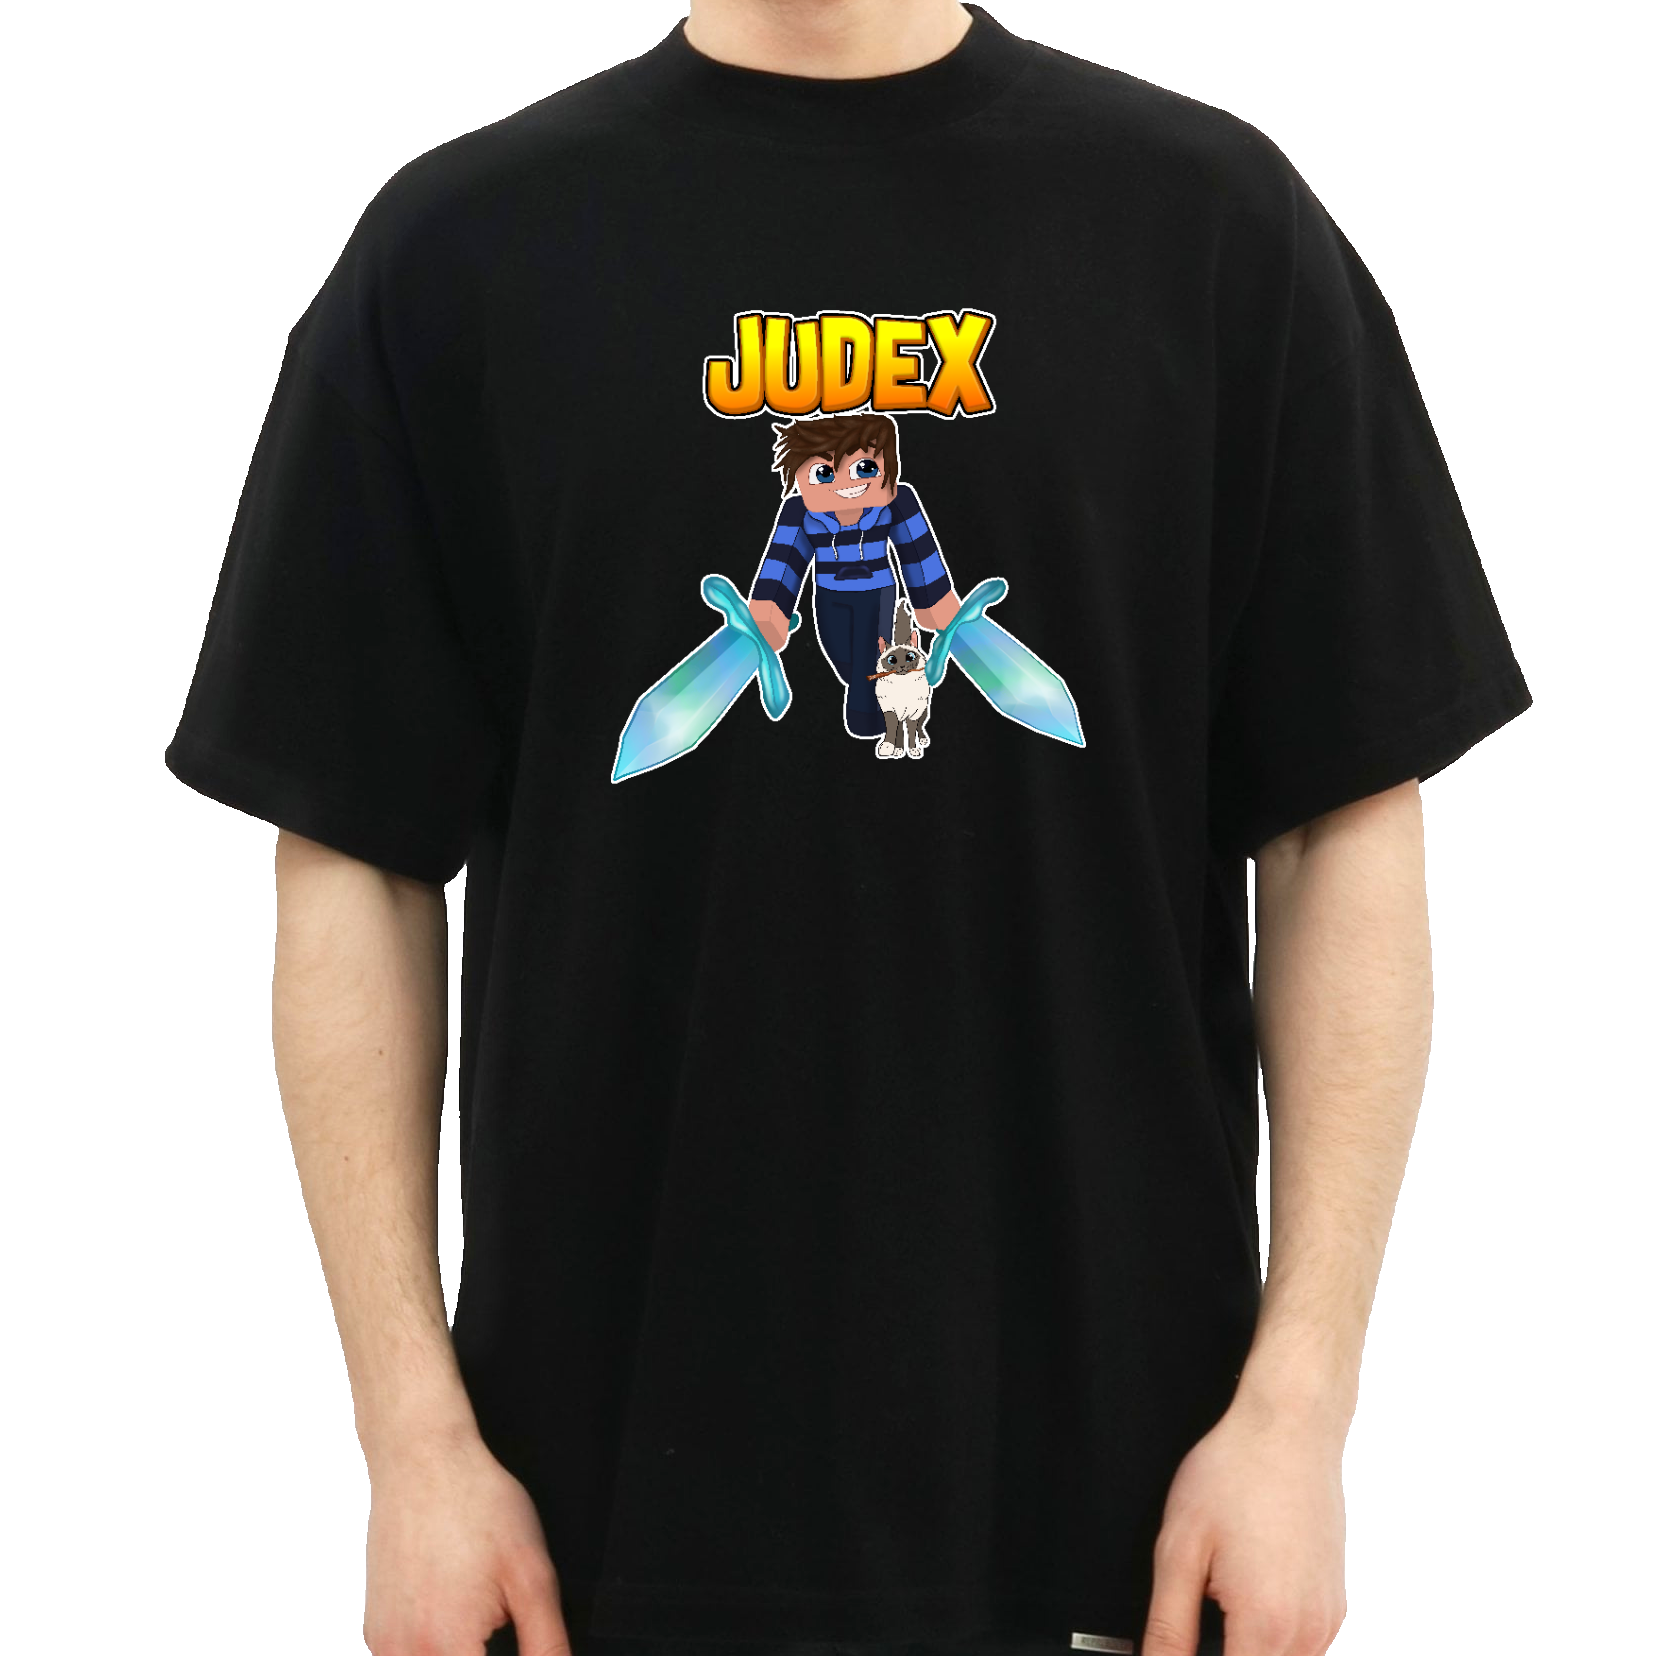 Judex Warrior T-shirt